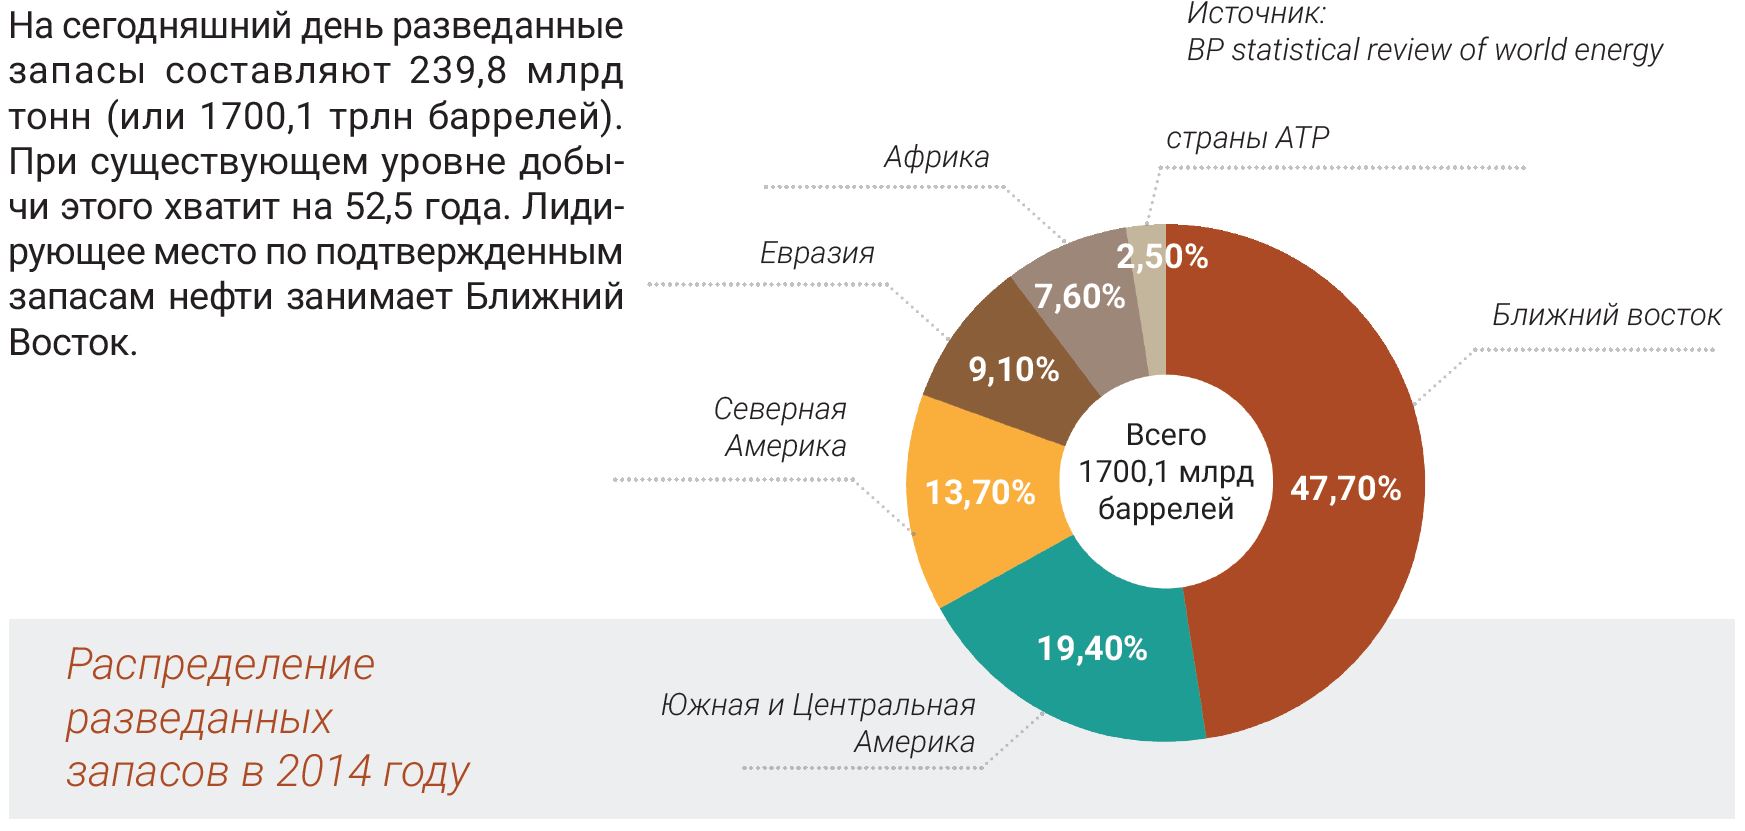 Распределение разведанных запасов в 2014 году